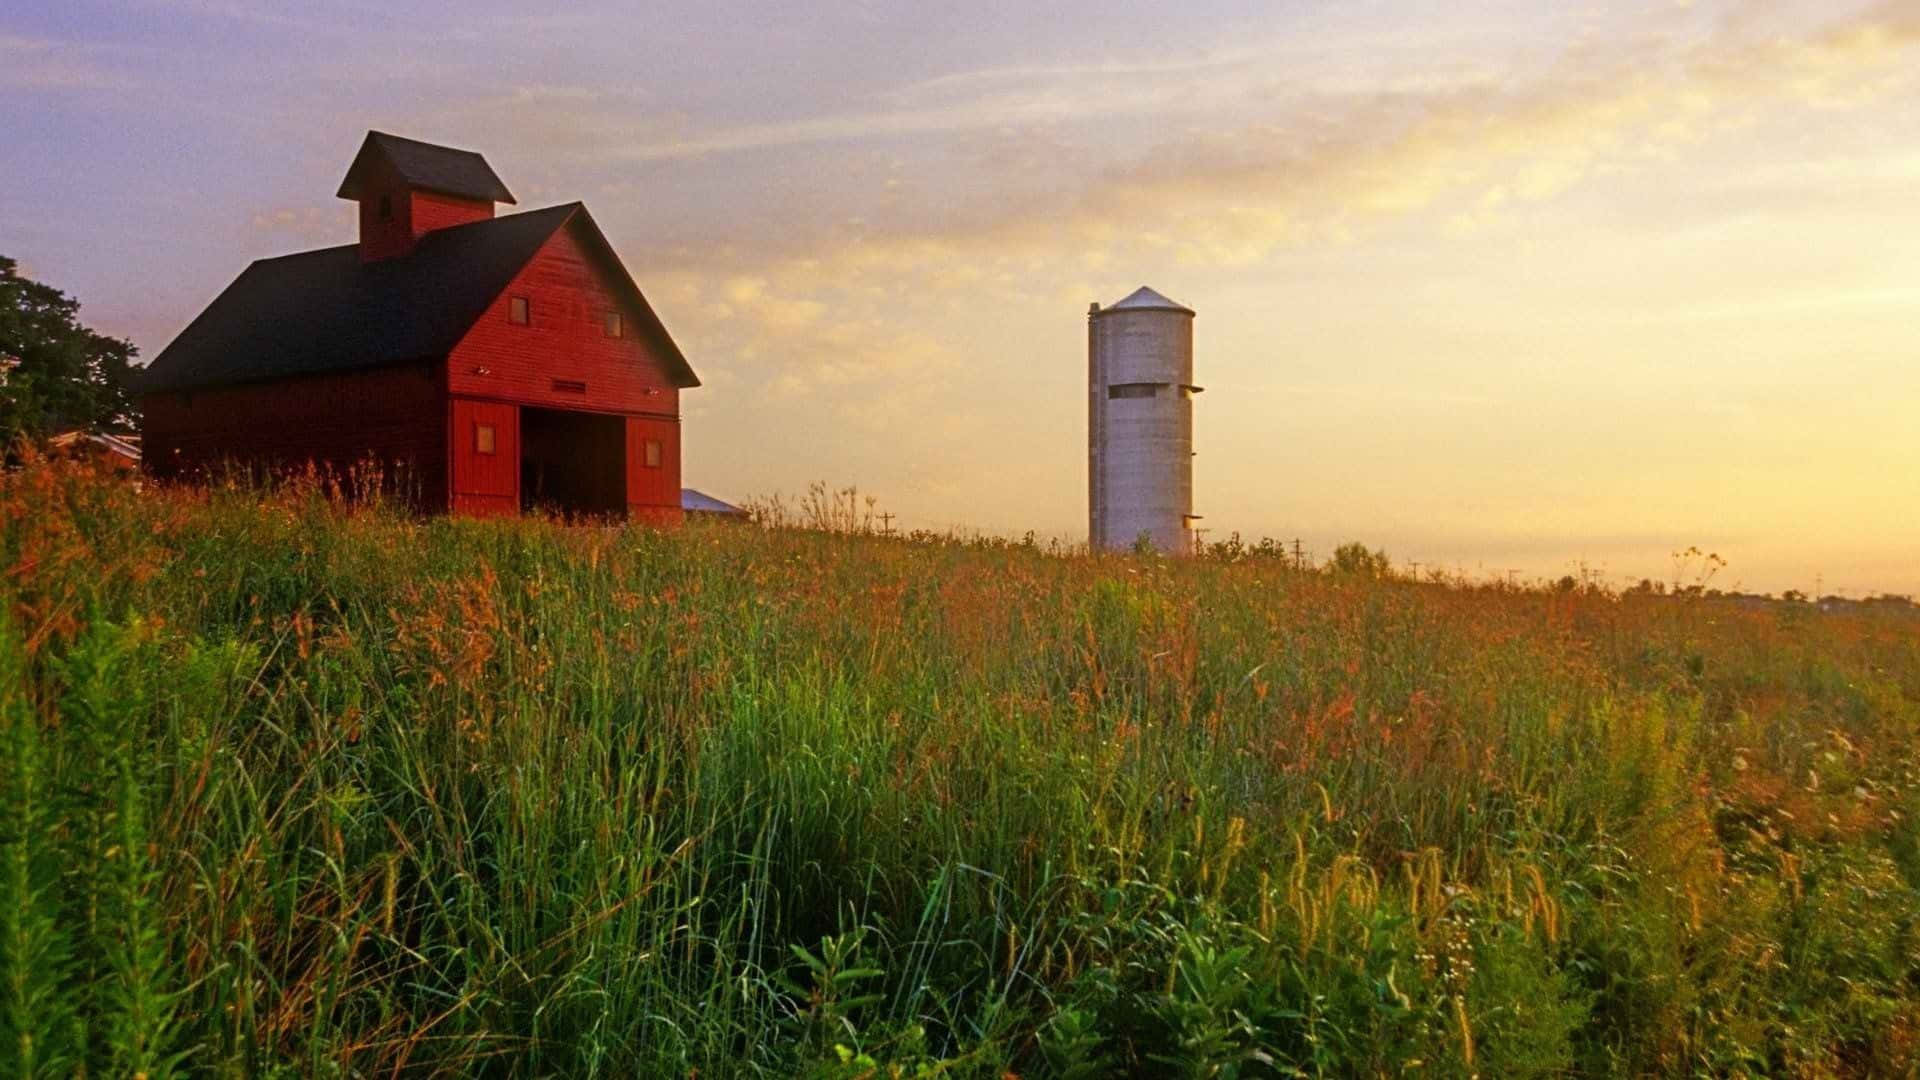 A timeless barn near the countryside.